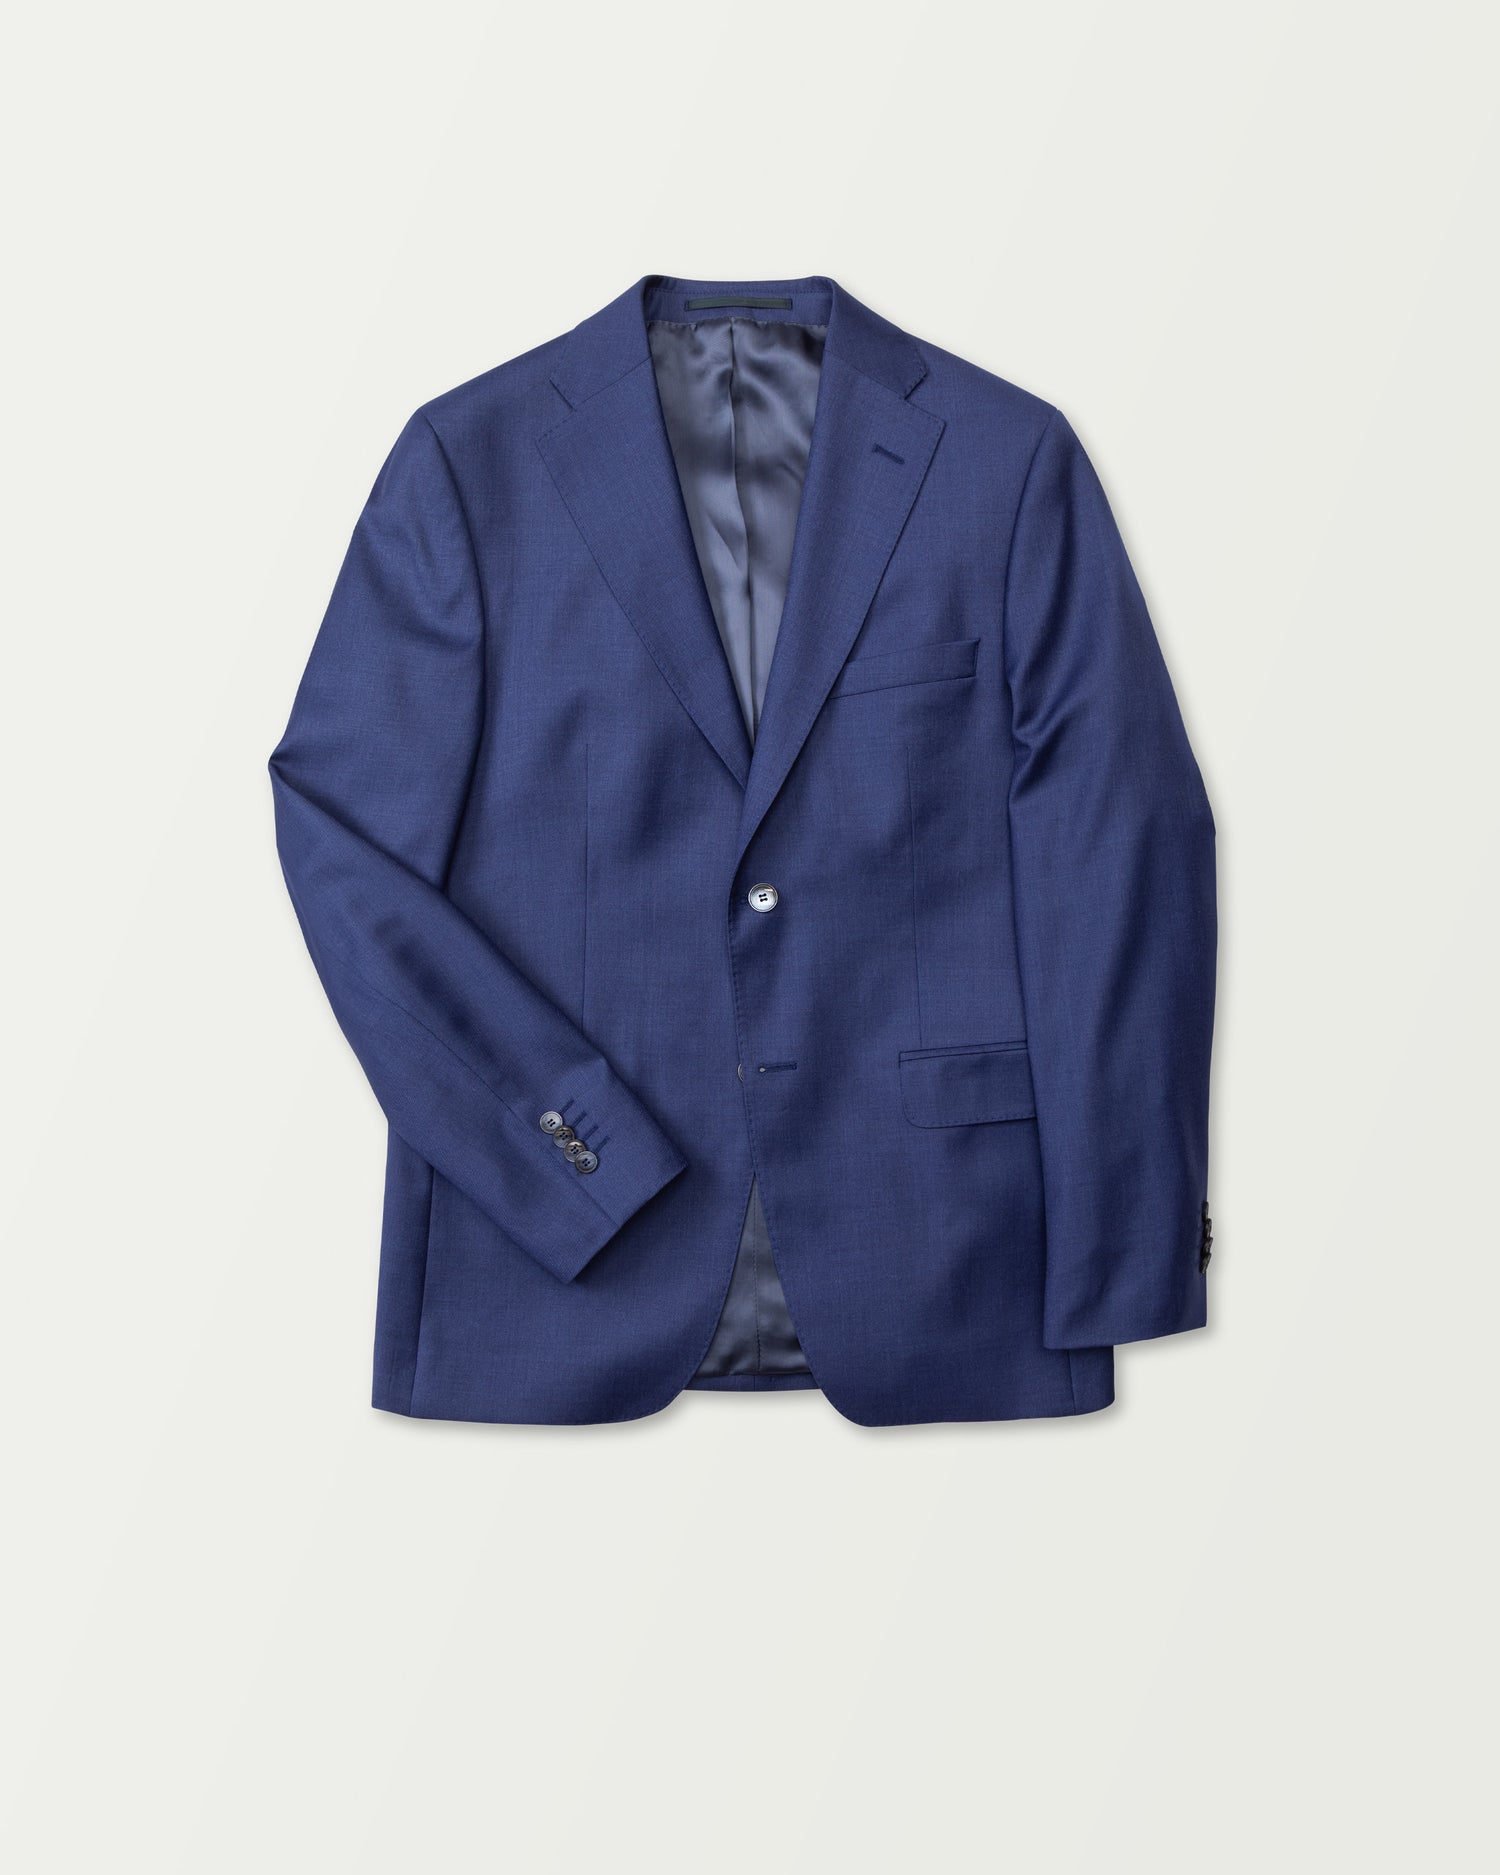 Elegant Premium Wool Jacket in Ocean Blue (8653431996746)